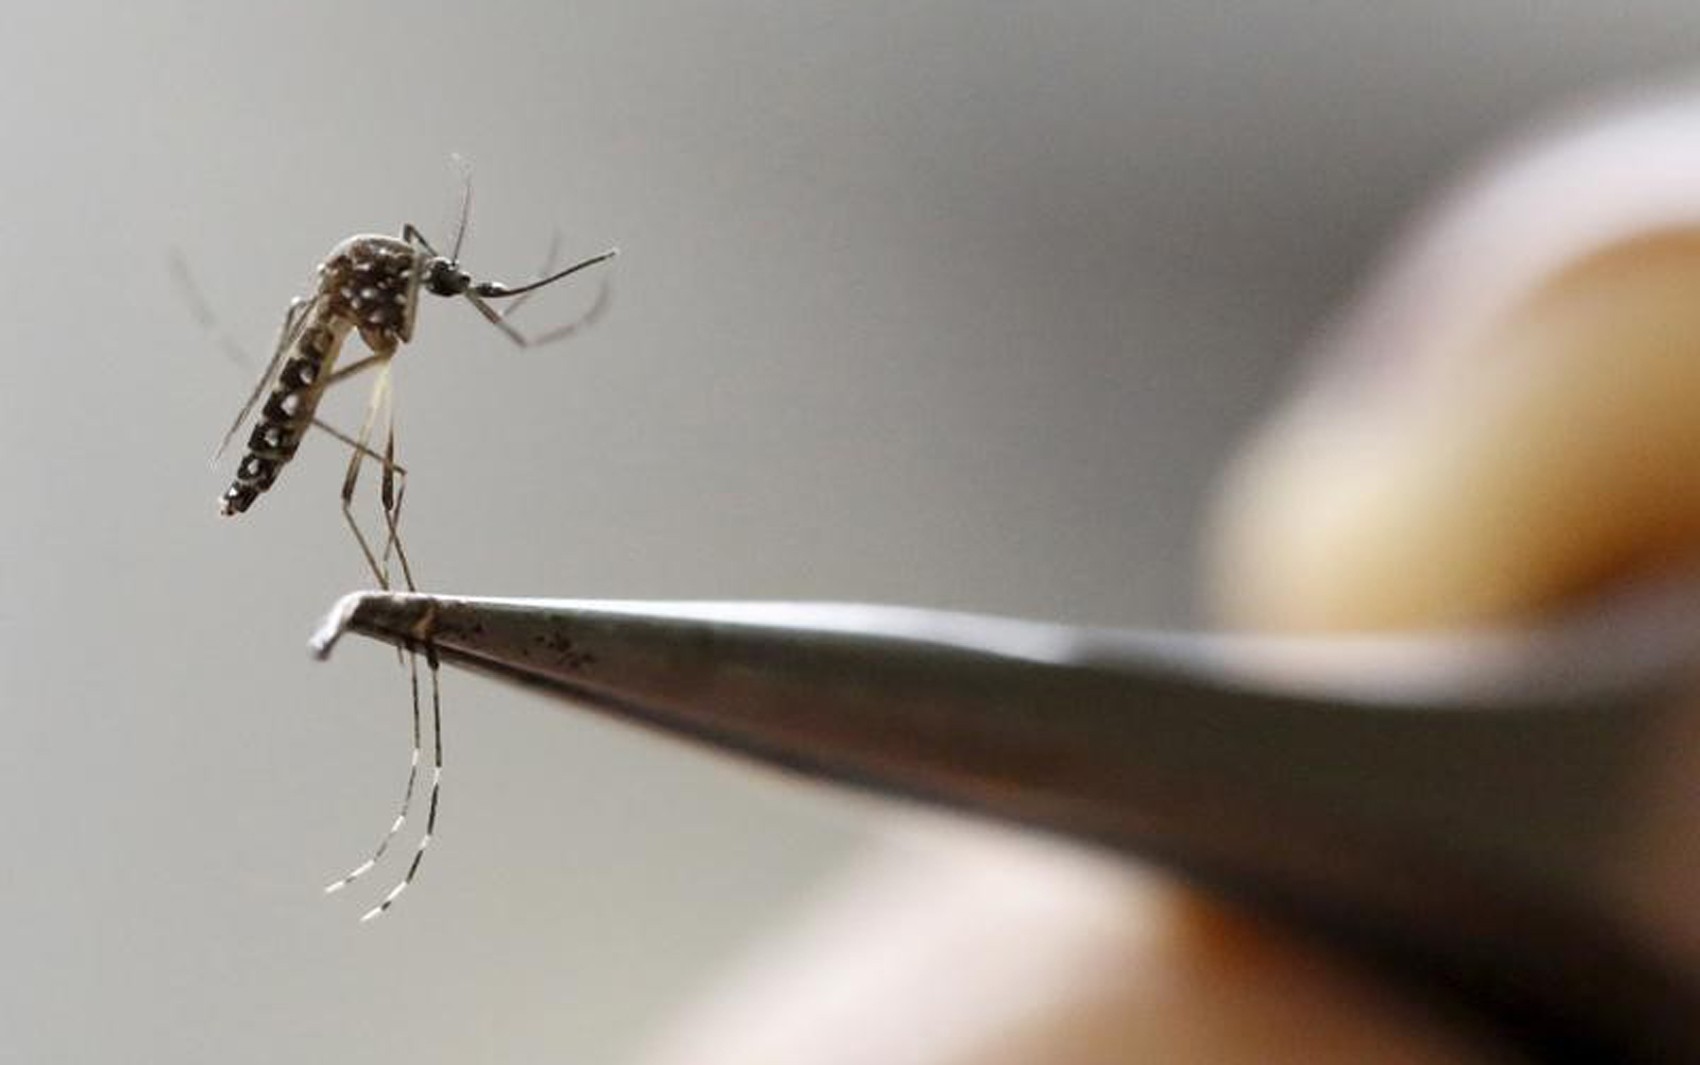  Mosquito Aedes aegypti, transmissor de zika, dengue, chikungunya e febre amarela, é analisado em laboratório de Cali, na Colômbia 